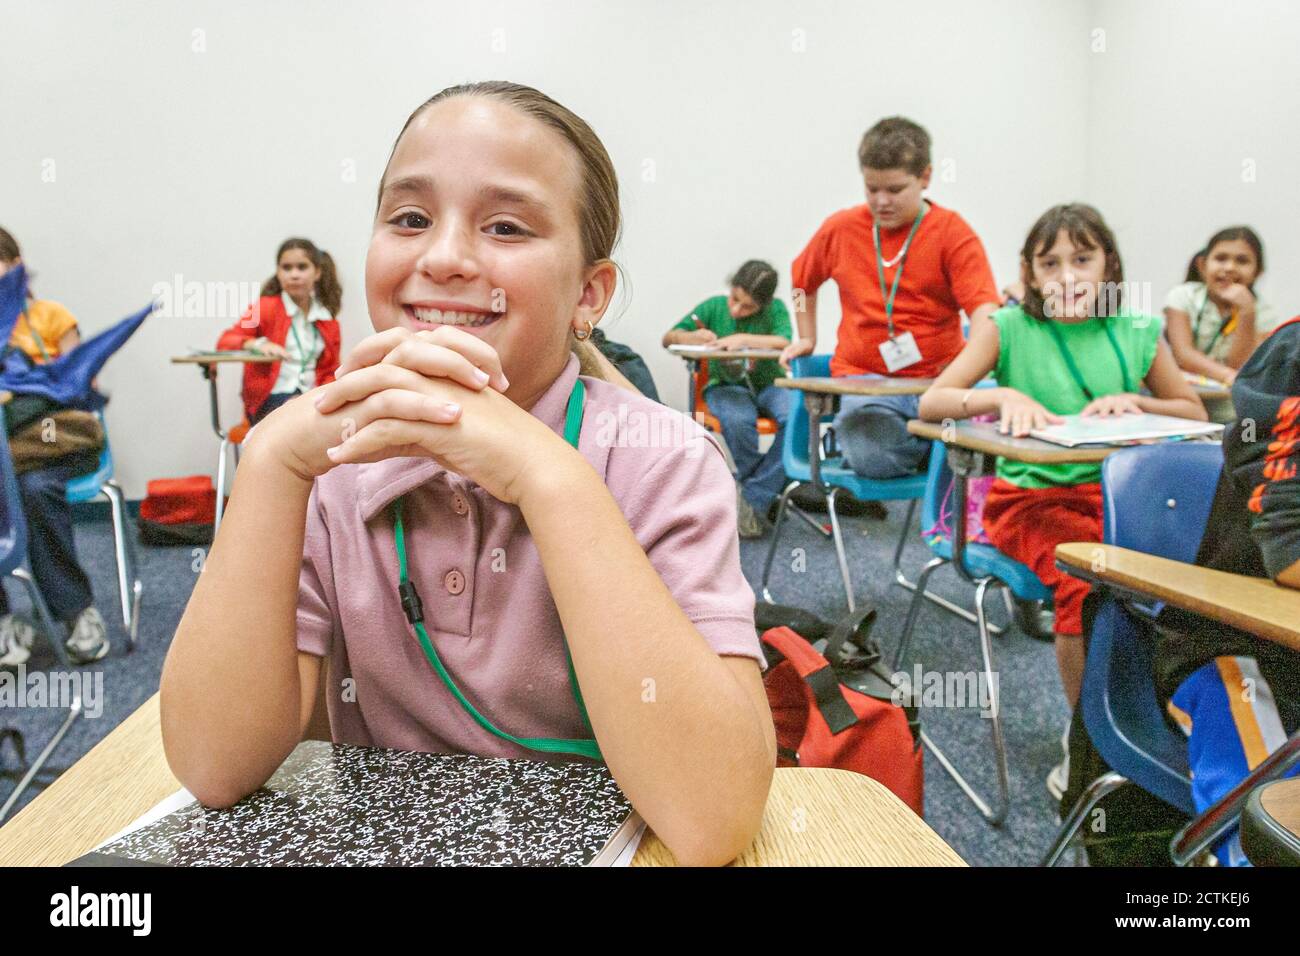 Miami Florida,Non Violence Project USA,Schüler gewaltfrei unterrichten,Mädchen lächelt lächelnd Klassenzimmer,Hispanic, Stockfoto